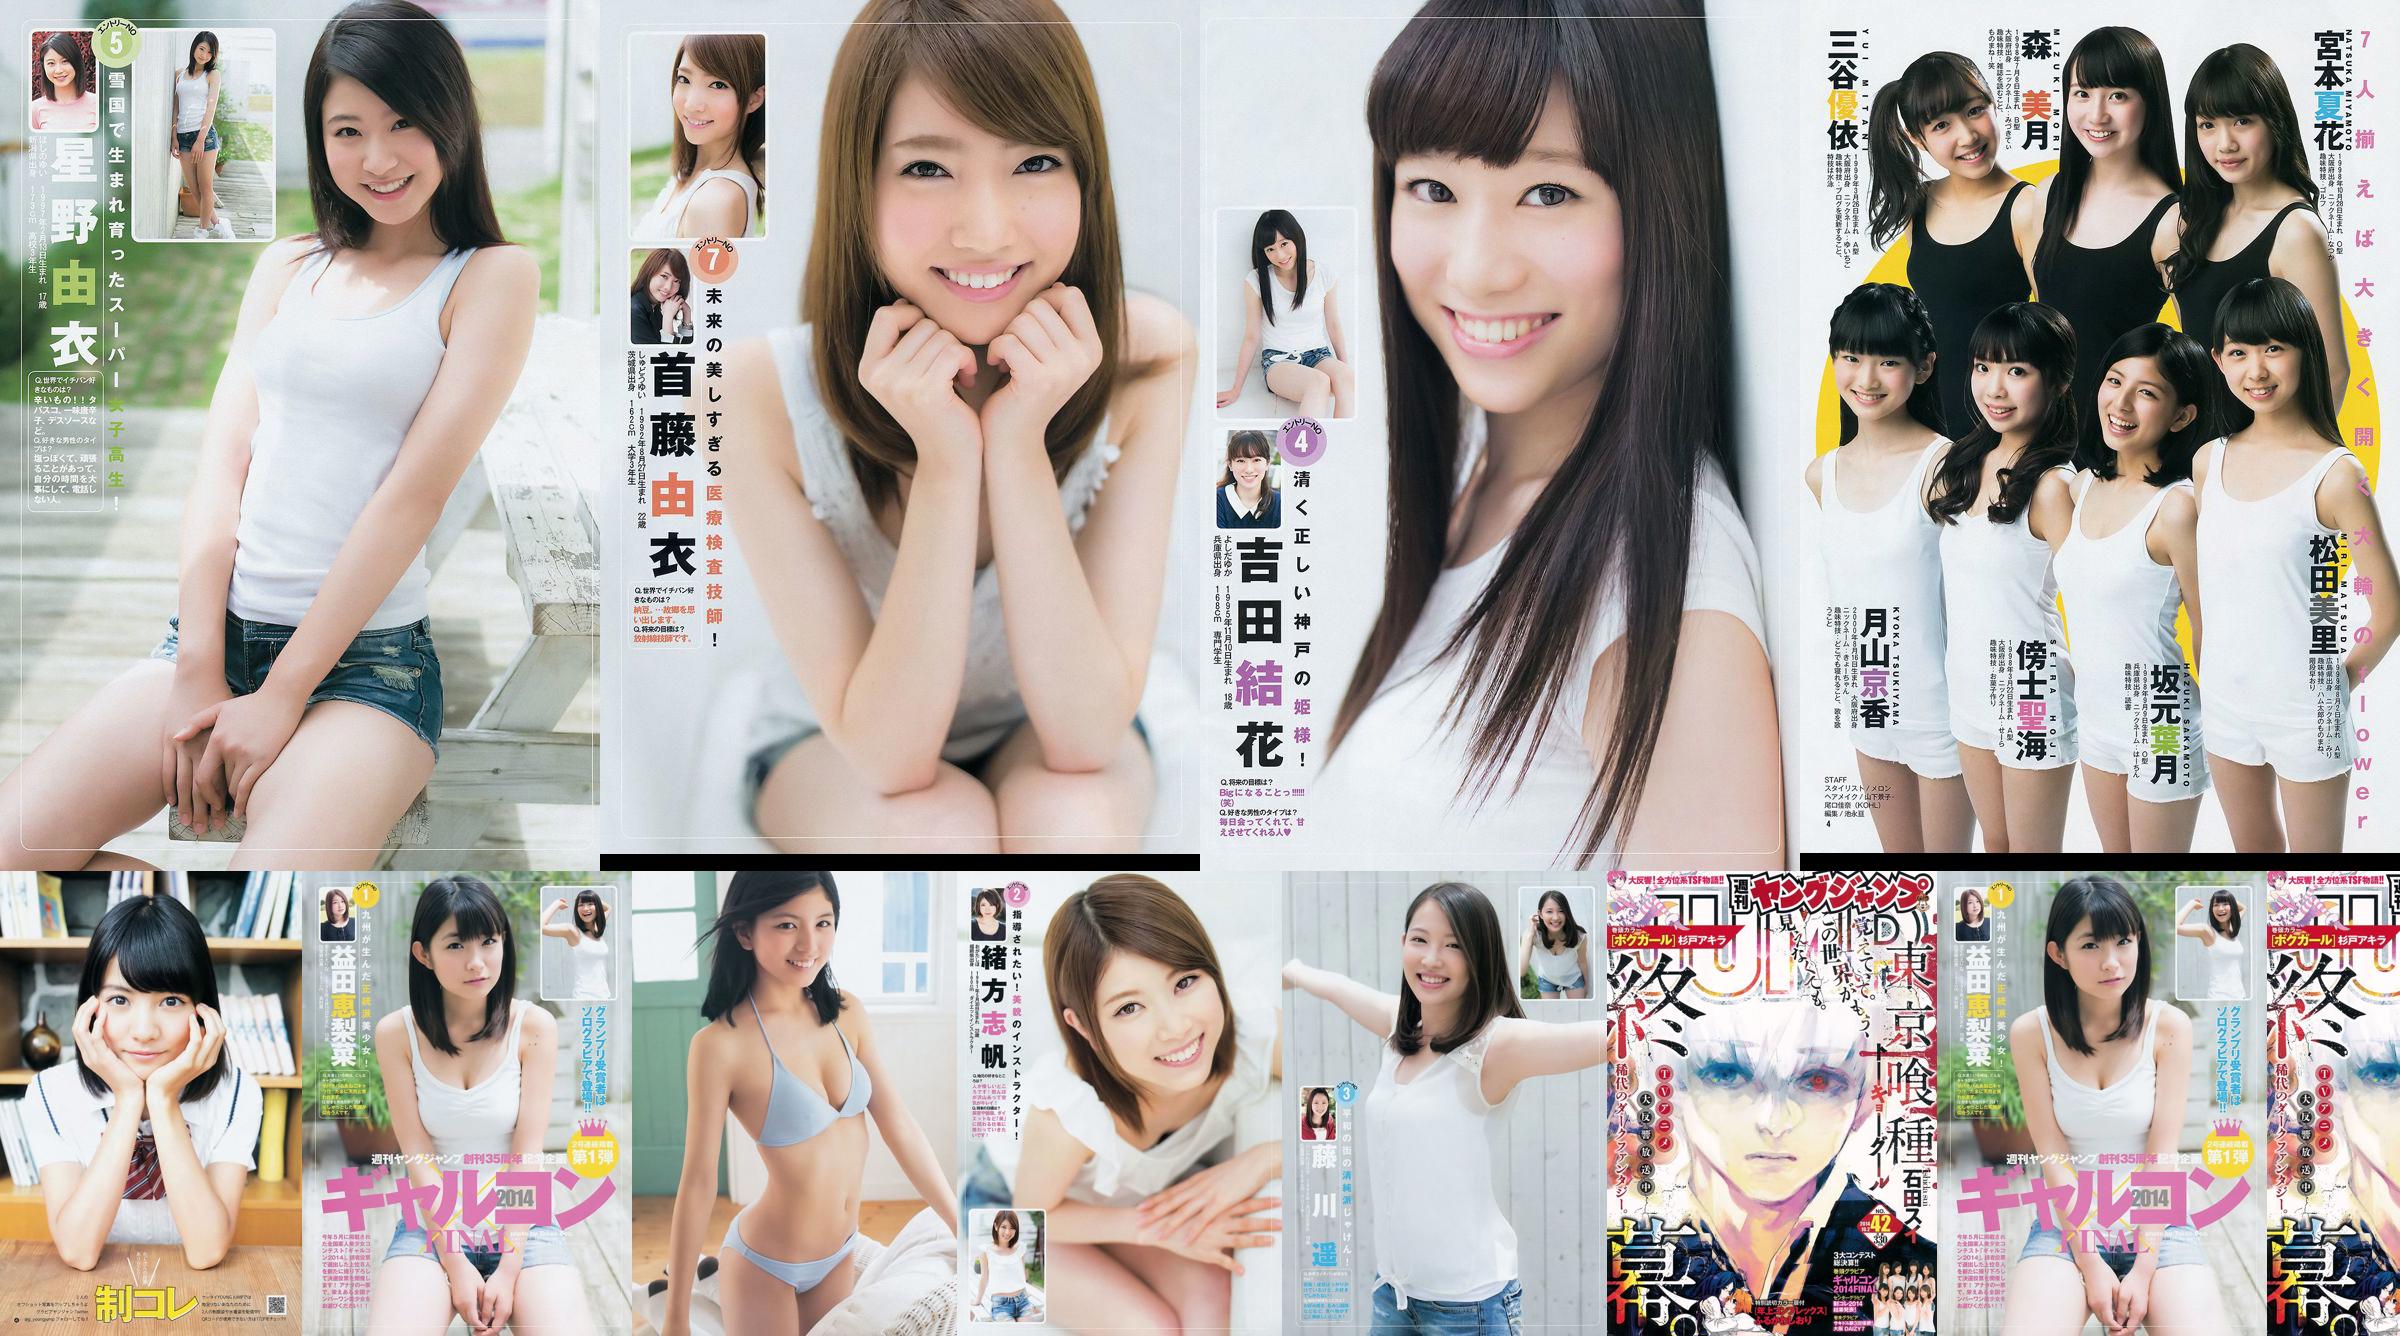 ギャルコン2014 制コレ アルティメット2014 大阪DAIZY7 [Weekly Young Jump] 2014年No.42 写真杂志 No.4c5252 ページ3